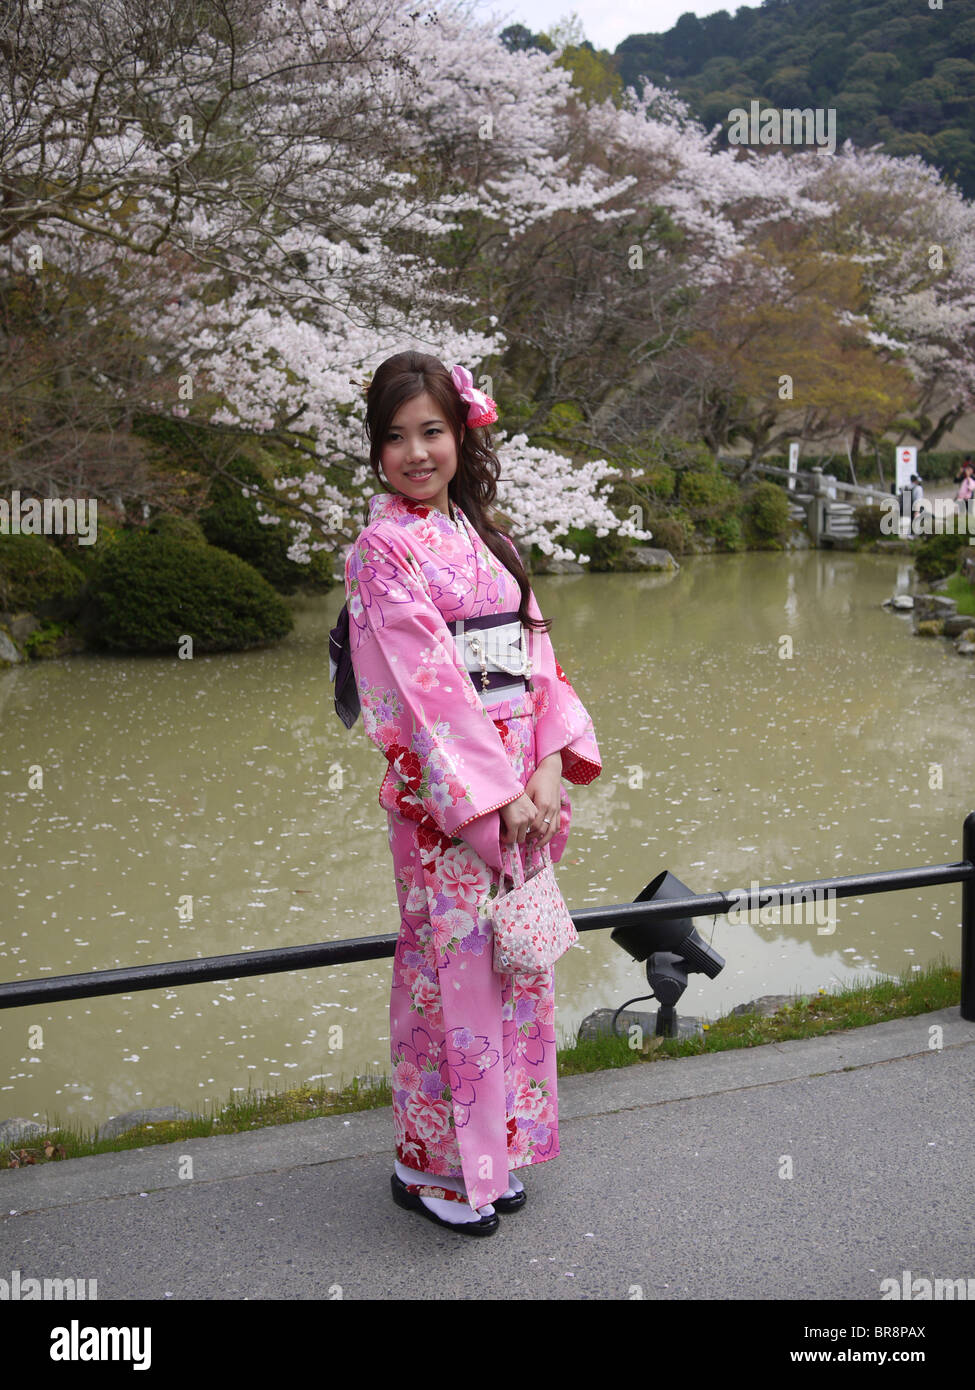 Japón, Honshu, Kyoto, Kiyomizu-Dera templo, mujer japonesa en kimono tradicional se sitúa delante de los Cerezos en flor Foto de stock